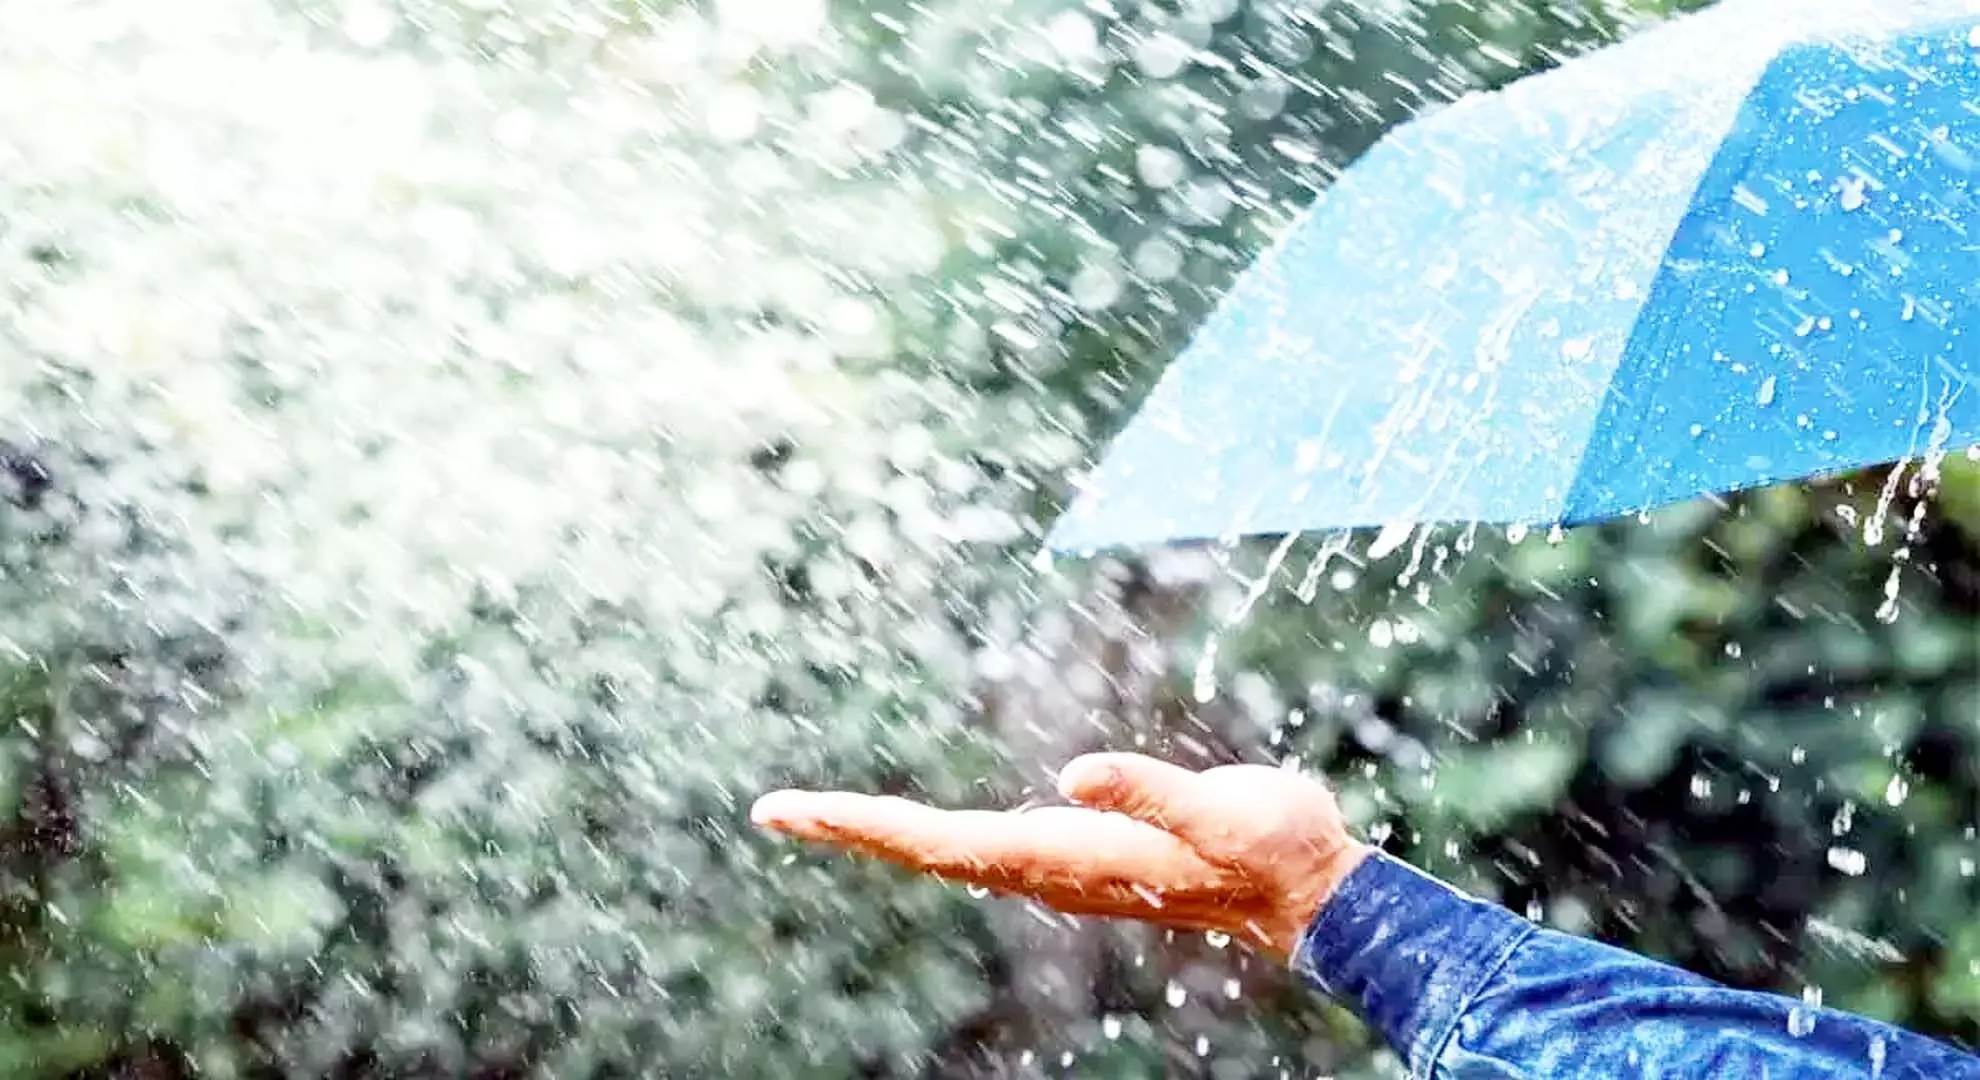 मौसम विभाग ने एपी, तेलंगाना में हल्की से मध्यम बारिश का अनुमान लगाया है